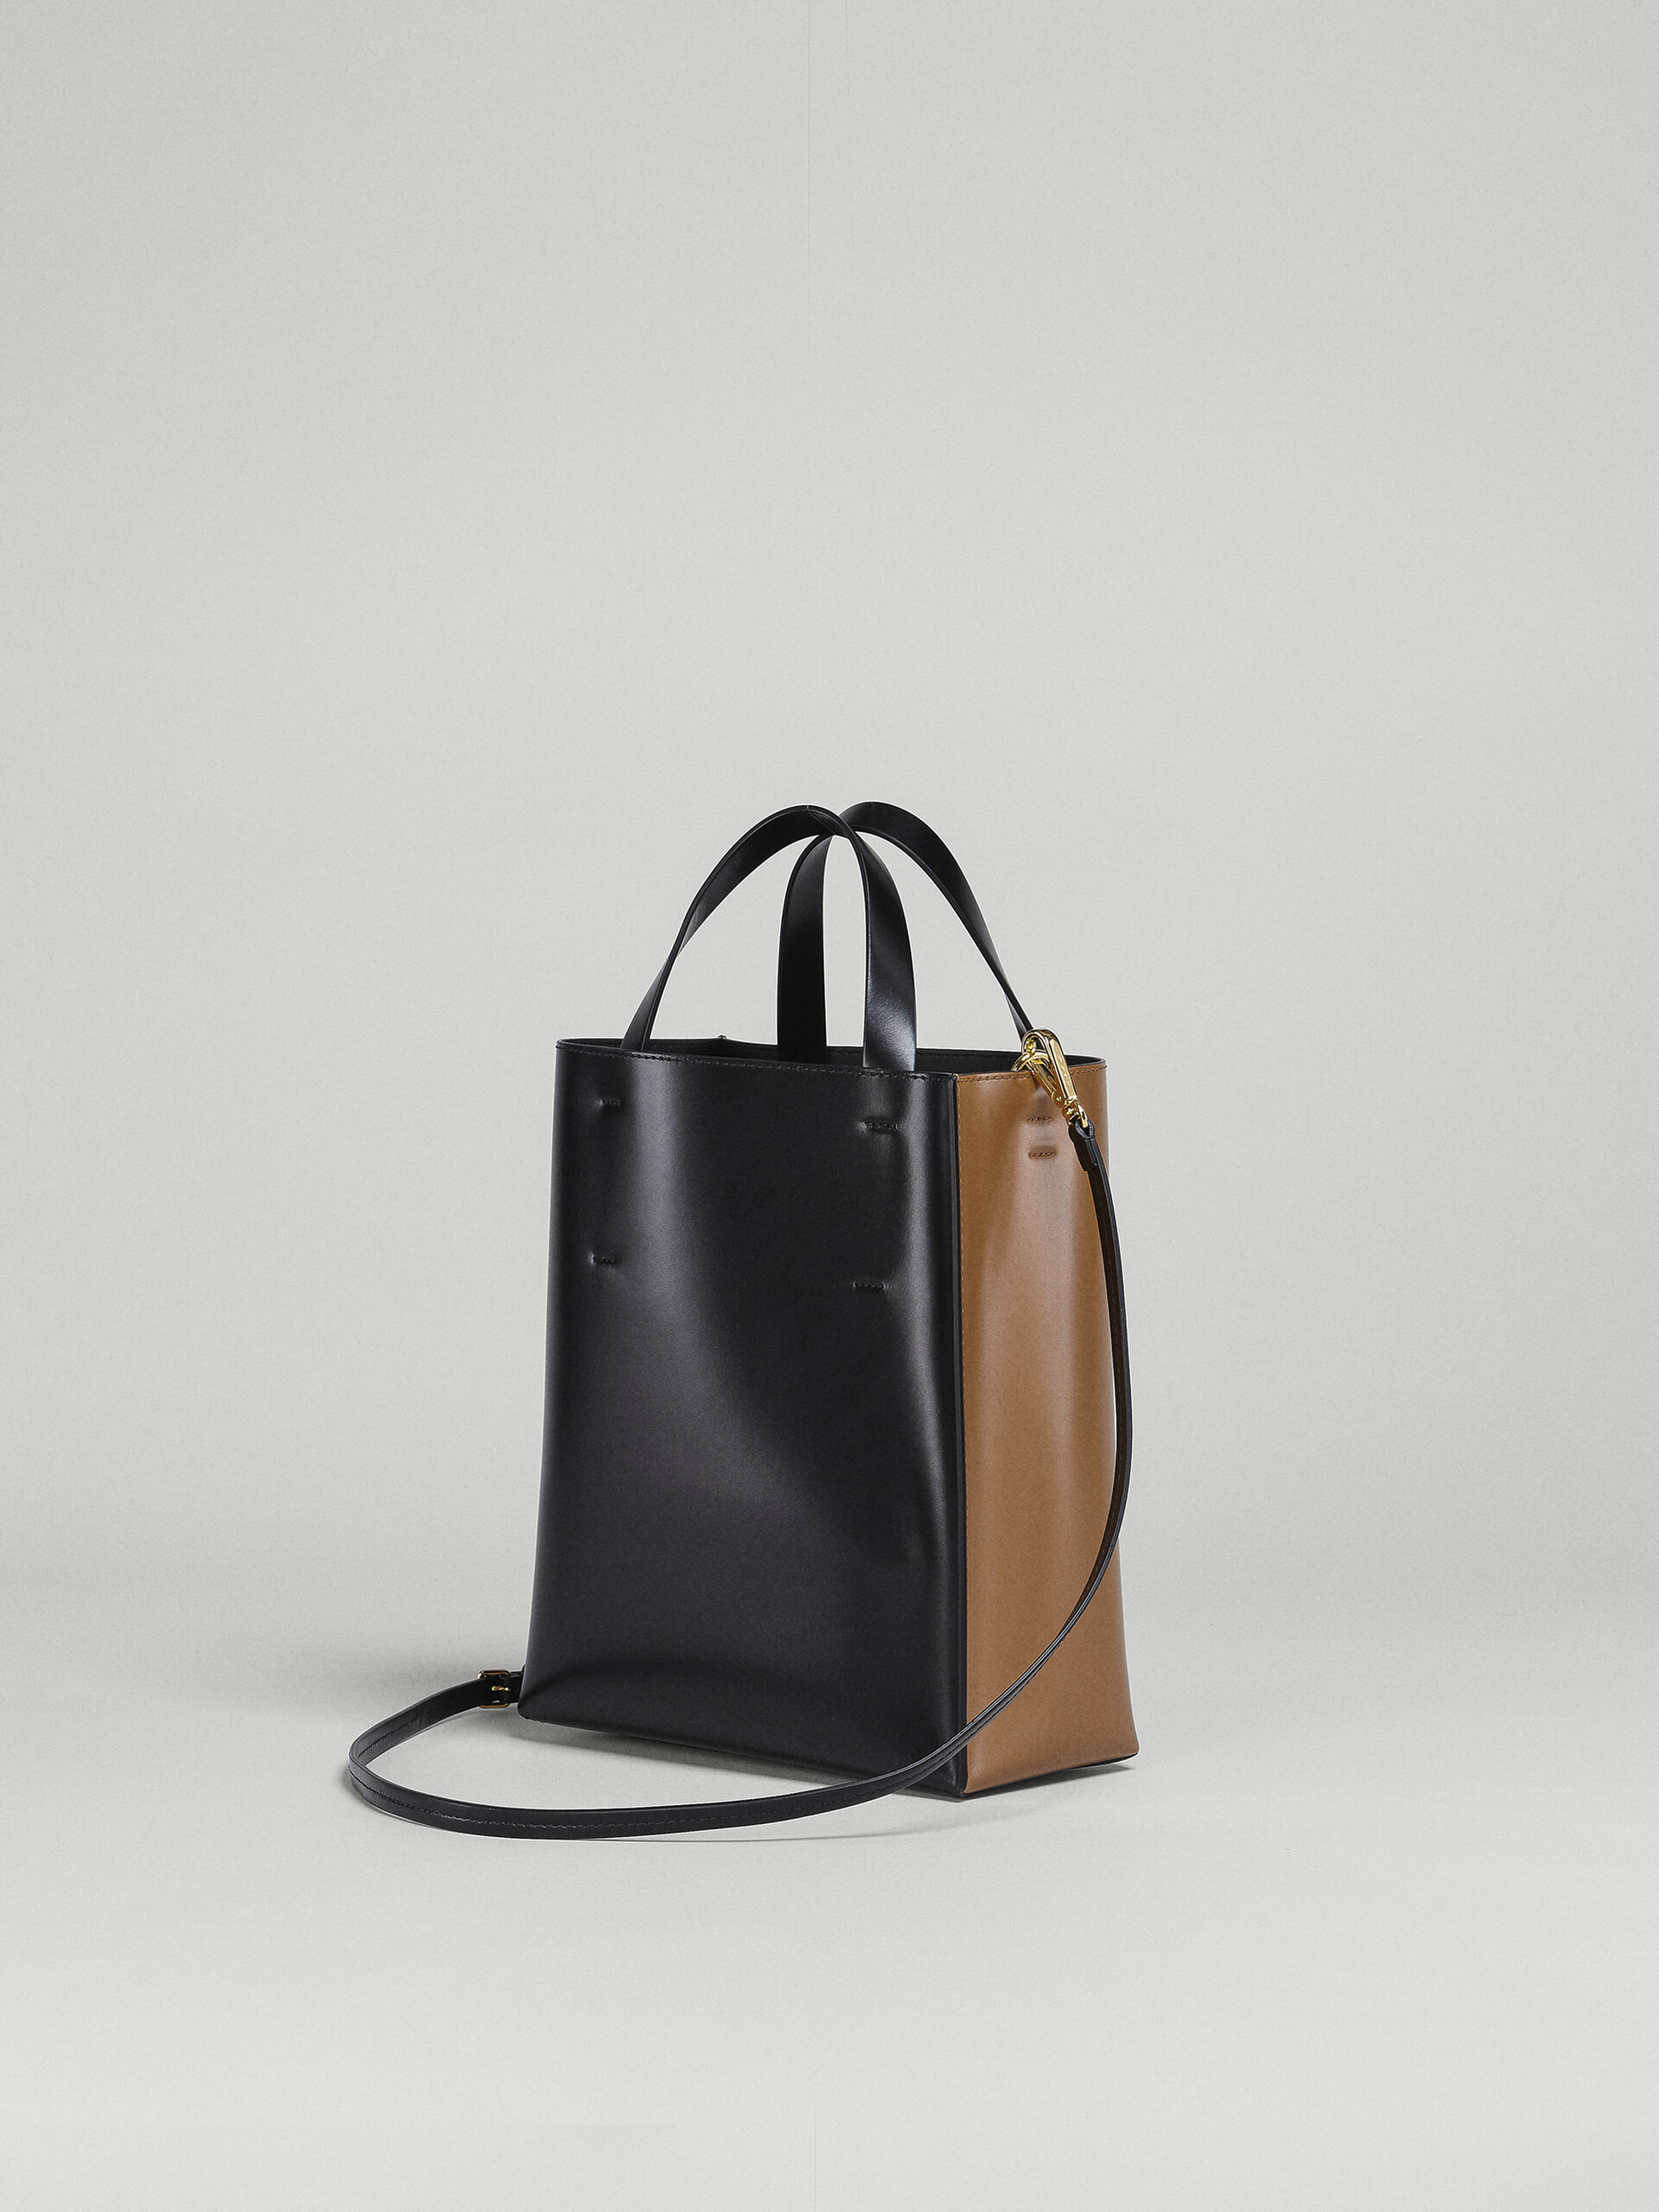 Petit sac MUSEO en cuir marron et noir - Sacs cabas - Image 3